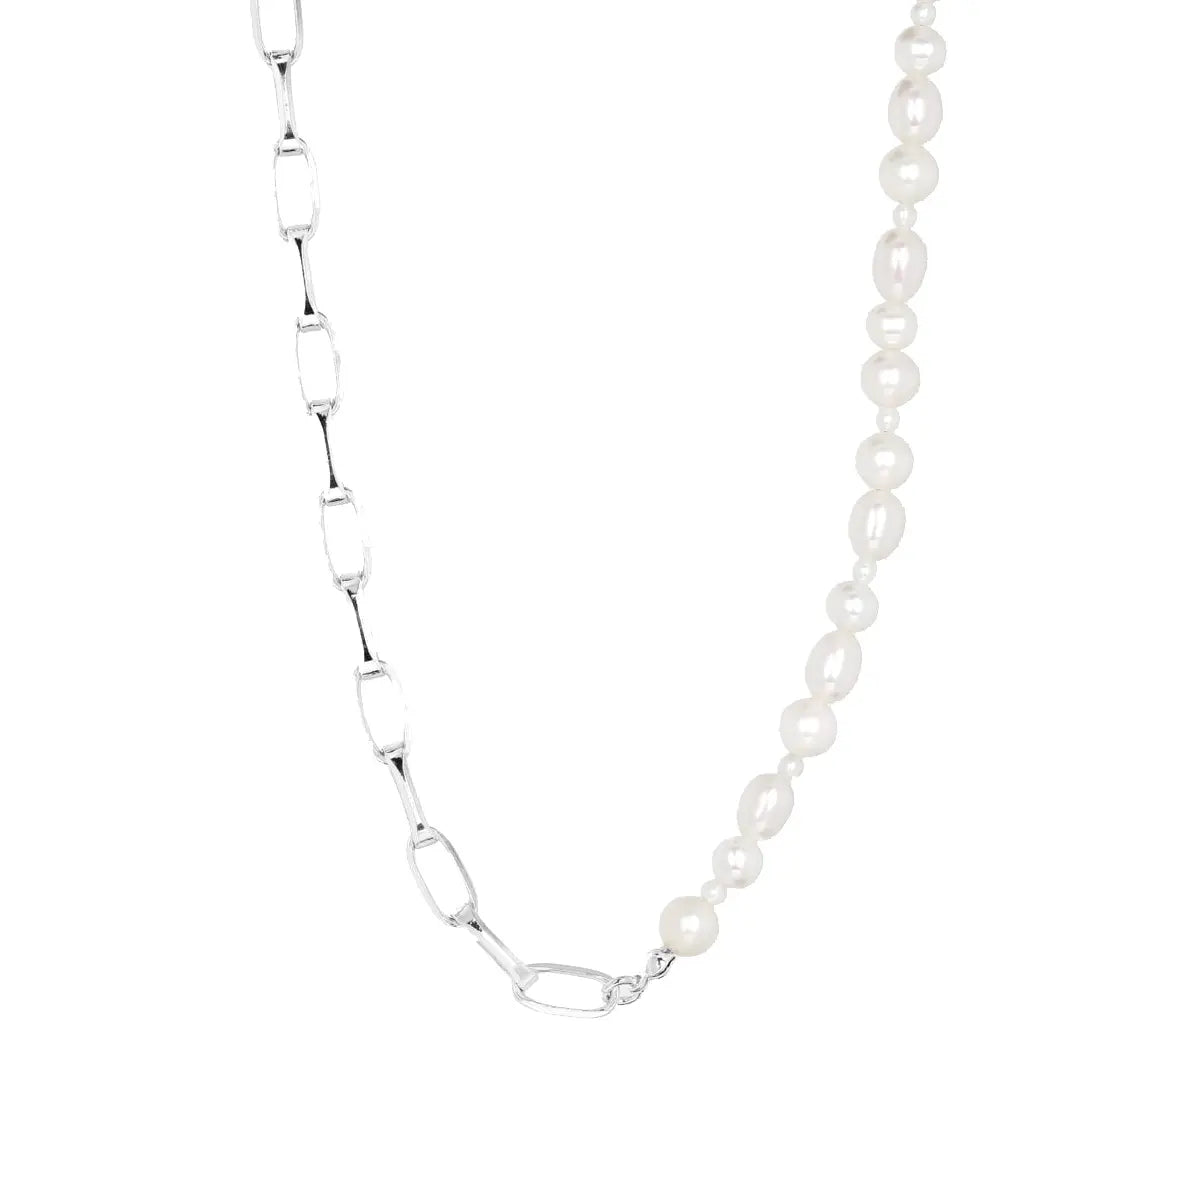 IX Uniqio Pearl halskæde - sølv fra Ix Studios